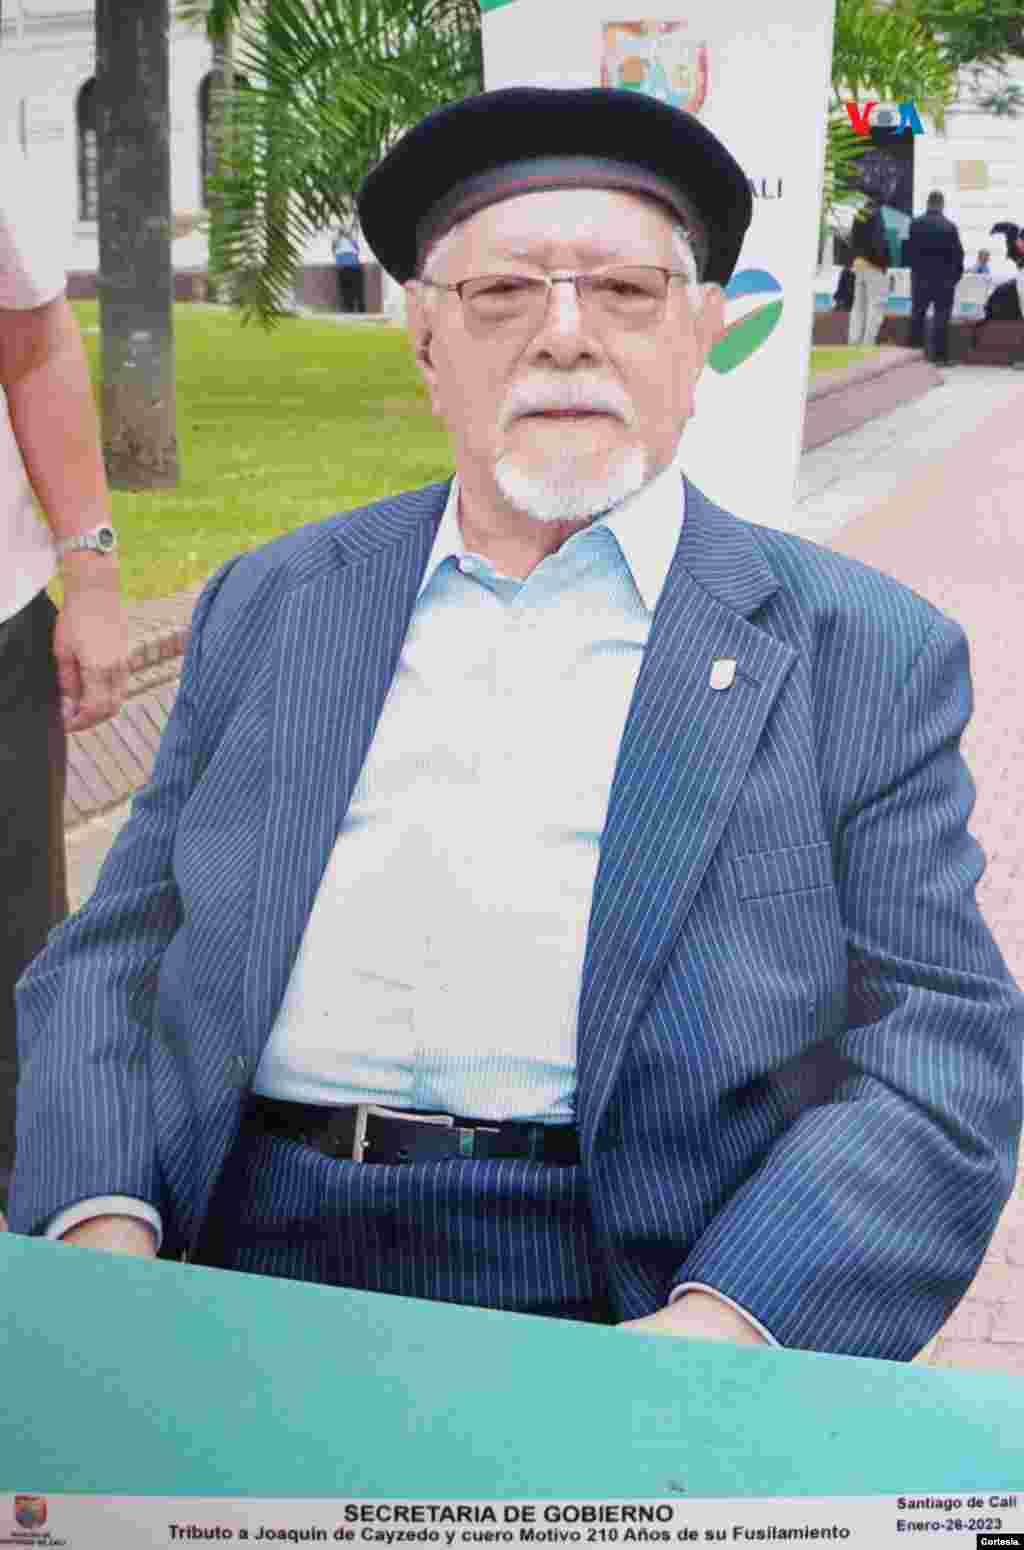 Luis ANtonio Cuéllar en la plaza de Cayzedo, el pasado 26 de enero de 2023 en el homenaje al doctor Joaquín de Cayzedo y Cuero.